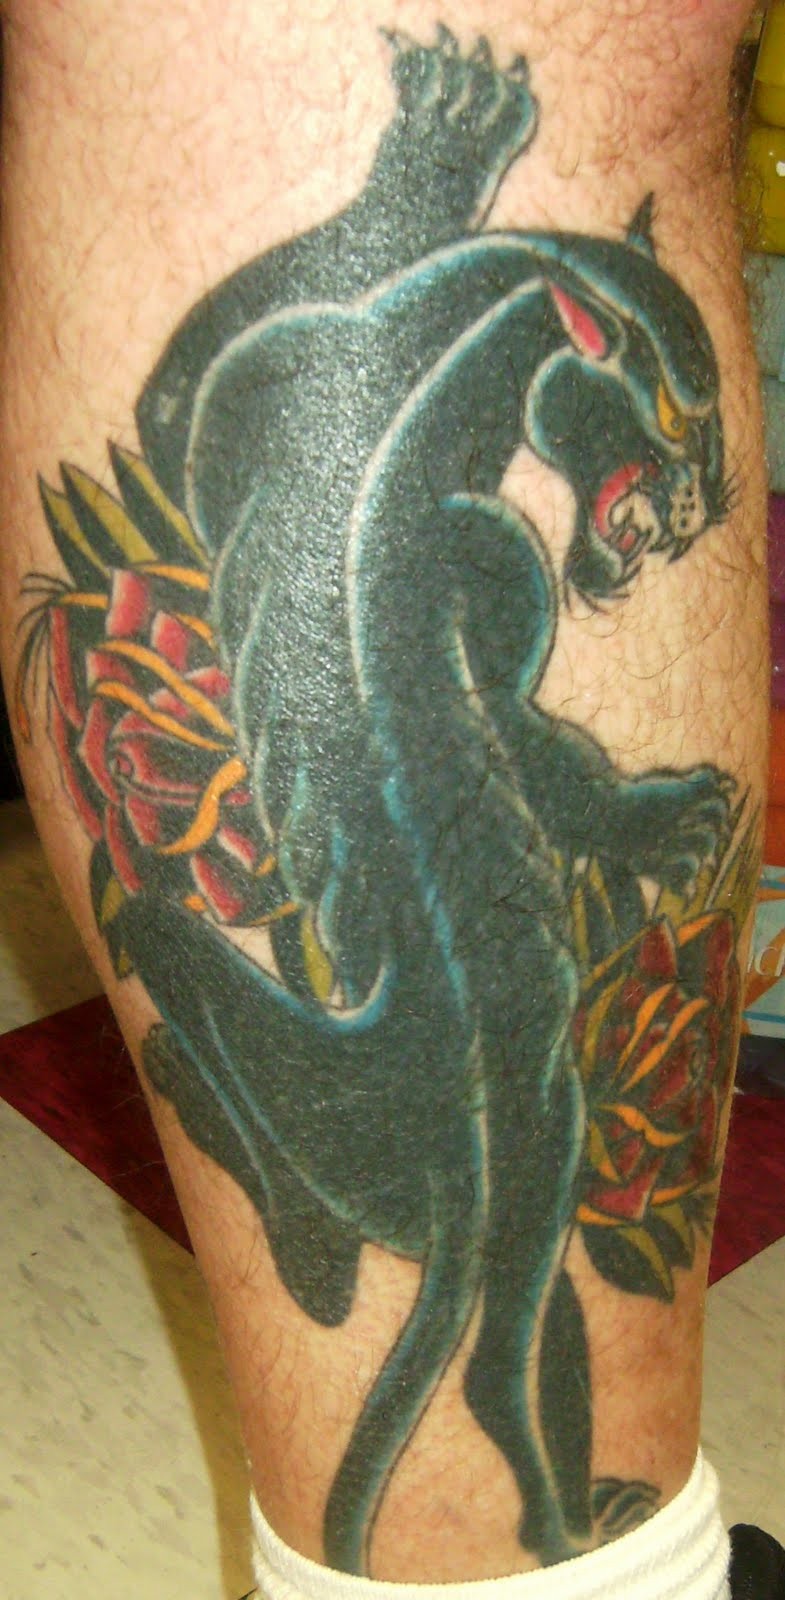 Tatuaje en la pierna de una pantera negra y rosas.